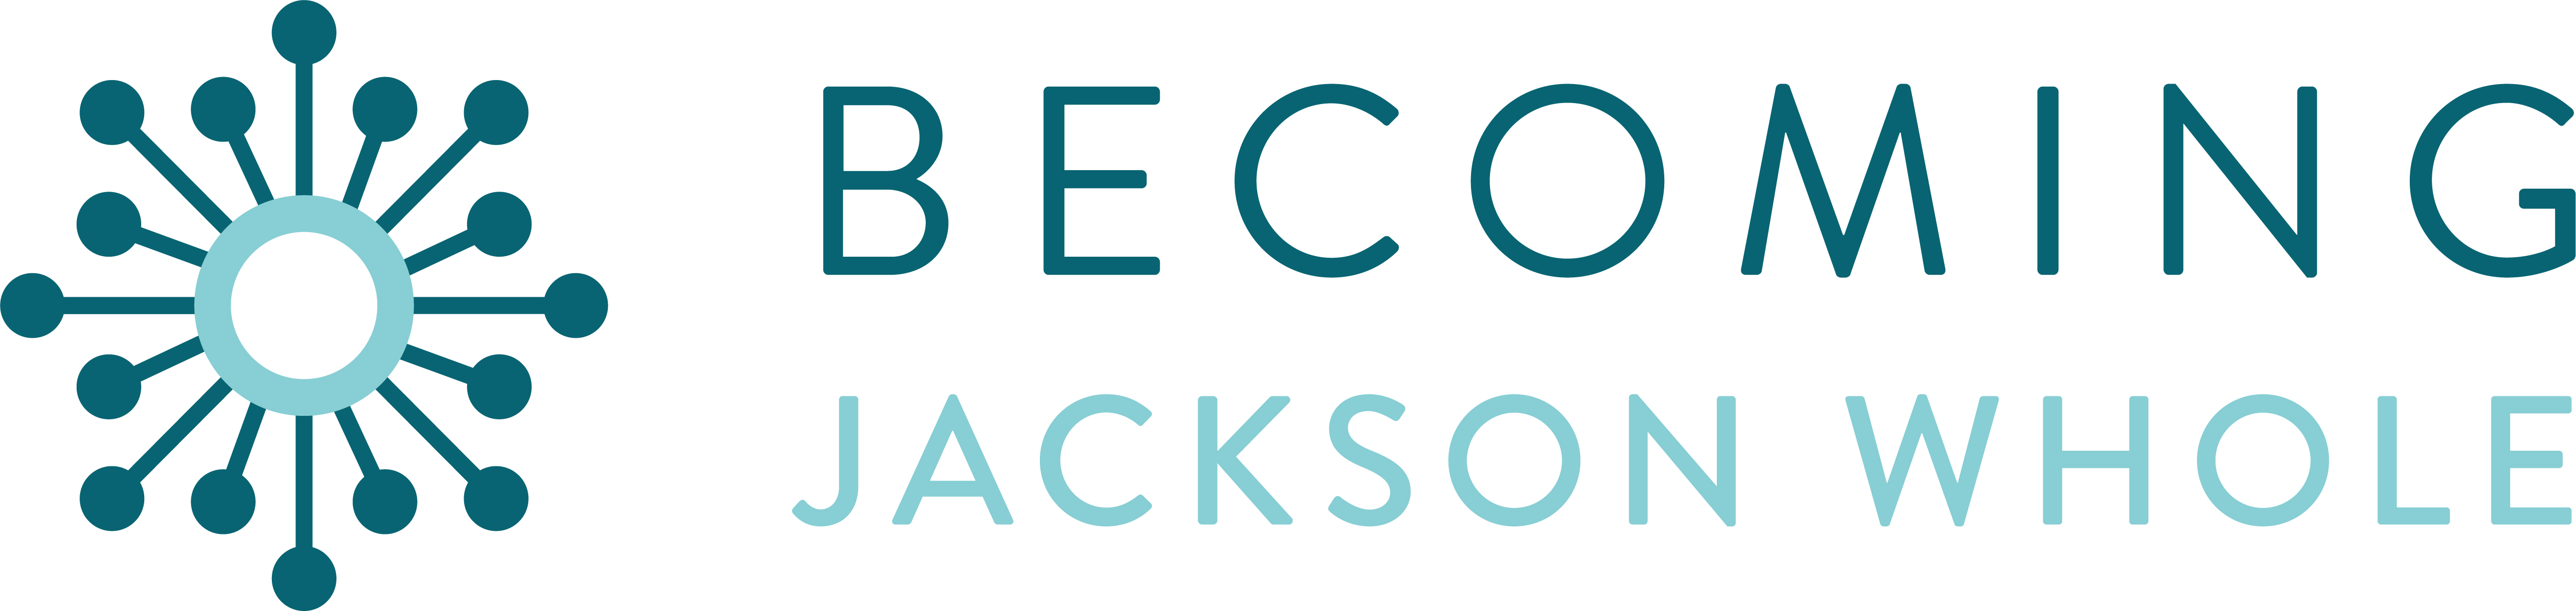 Becoming Jackson Whole logo